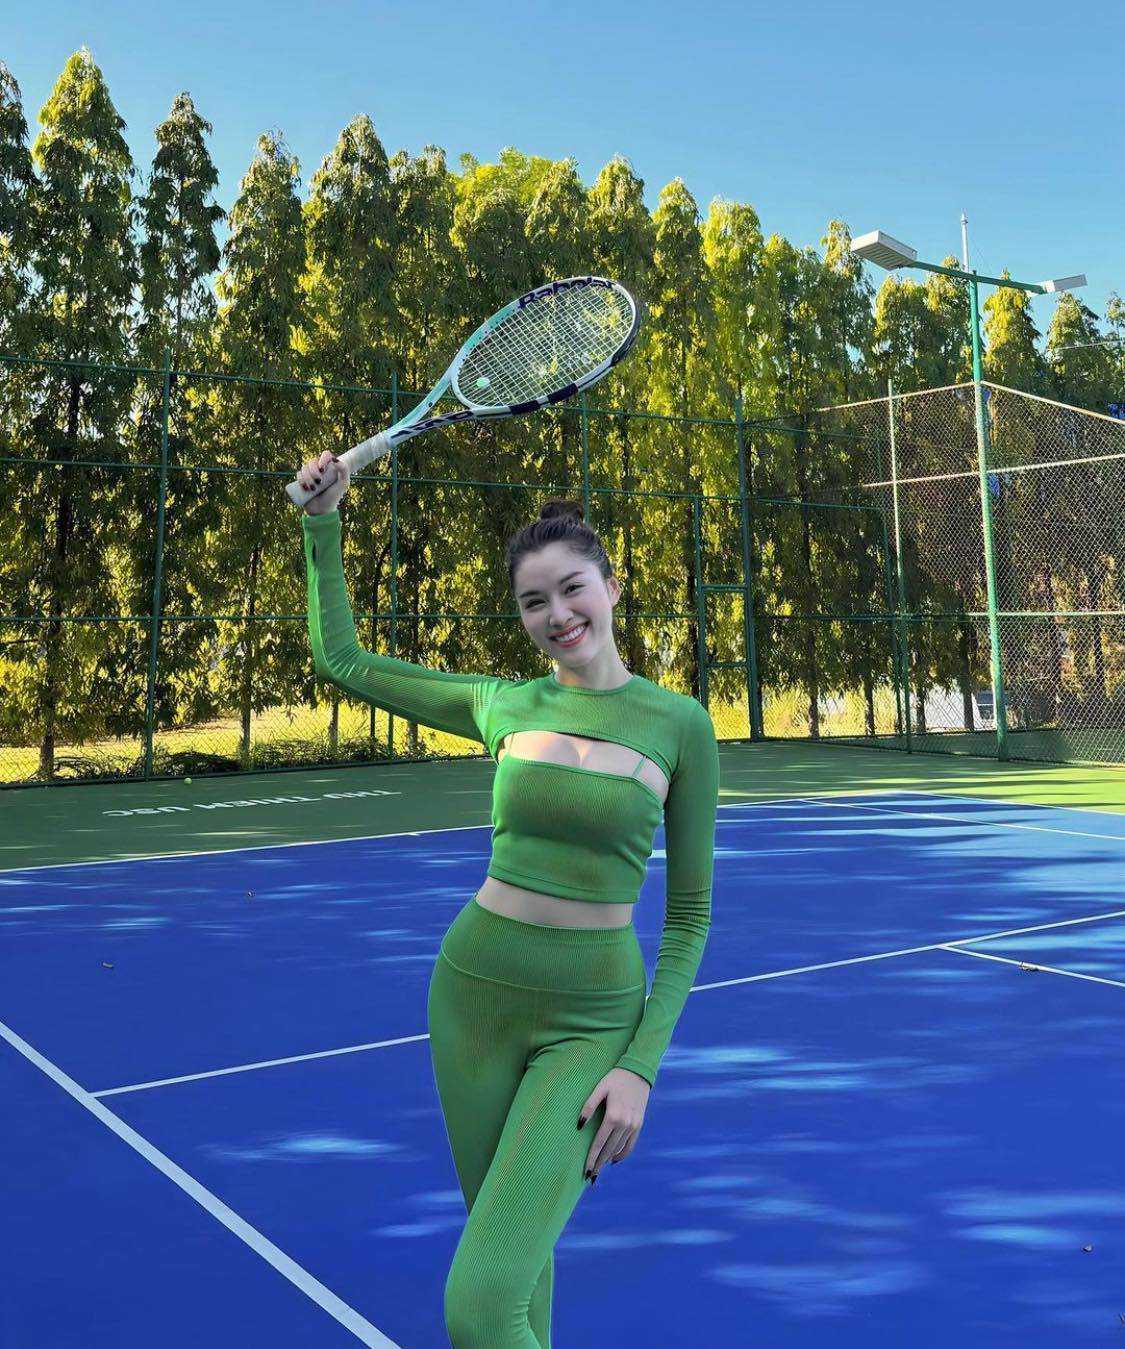 MC Nha Trang chân dài 110cm khoe đường cong với áo "vầng trăng khuyết" khi chơi tennis - 1